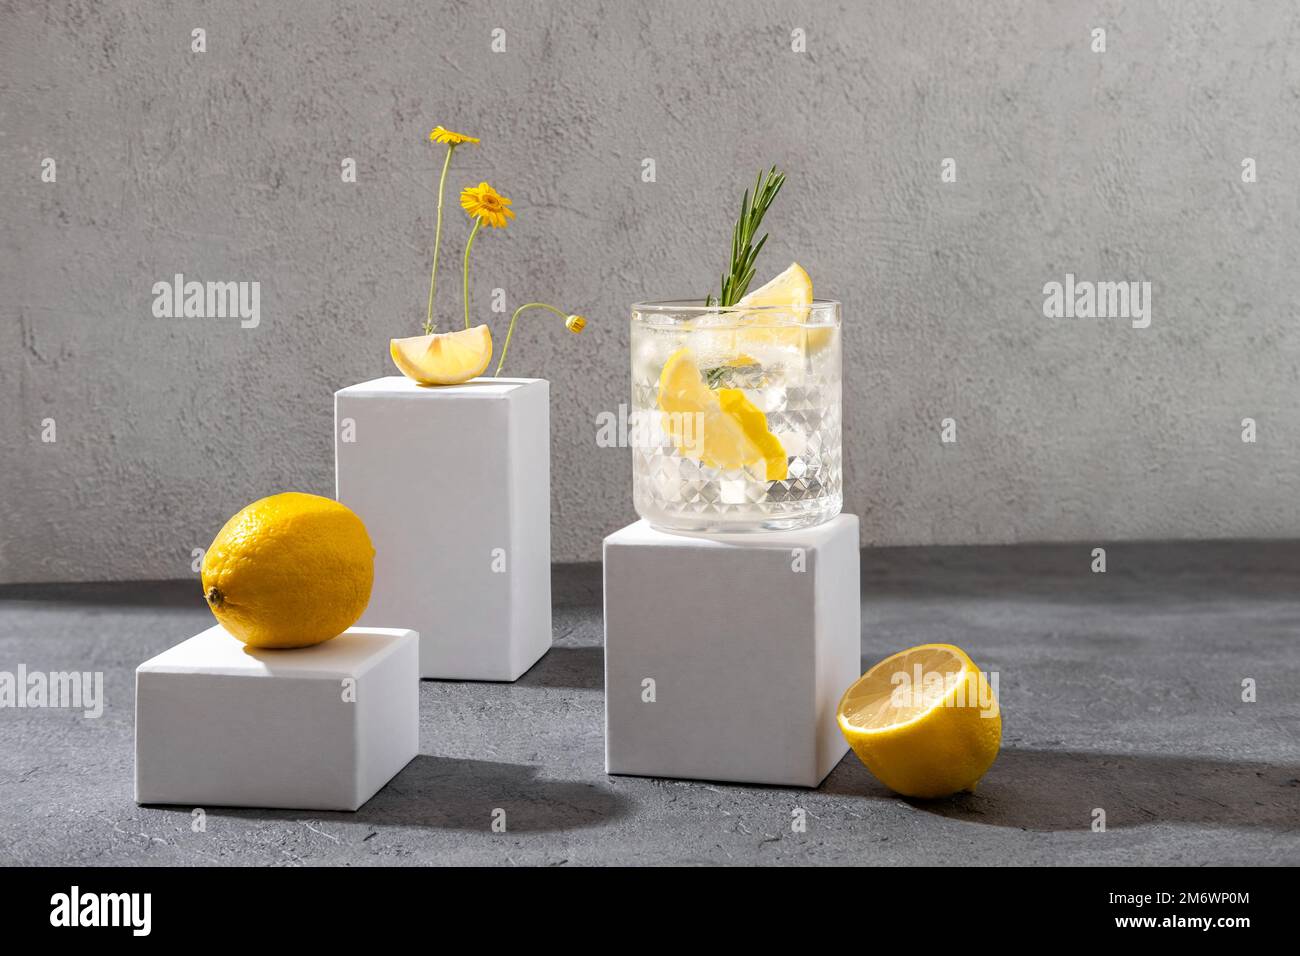 Sommercocktail mit Gin Tonic auf dem weißen Podium. Harter Seltercocktail mit Zitrone. Stockfoto